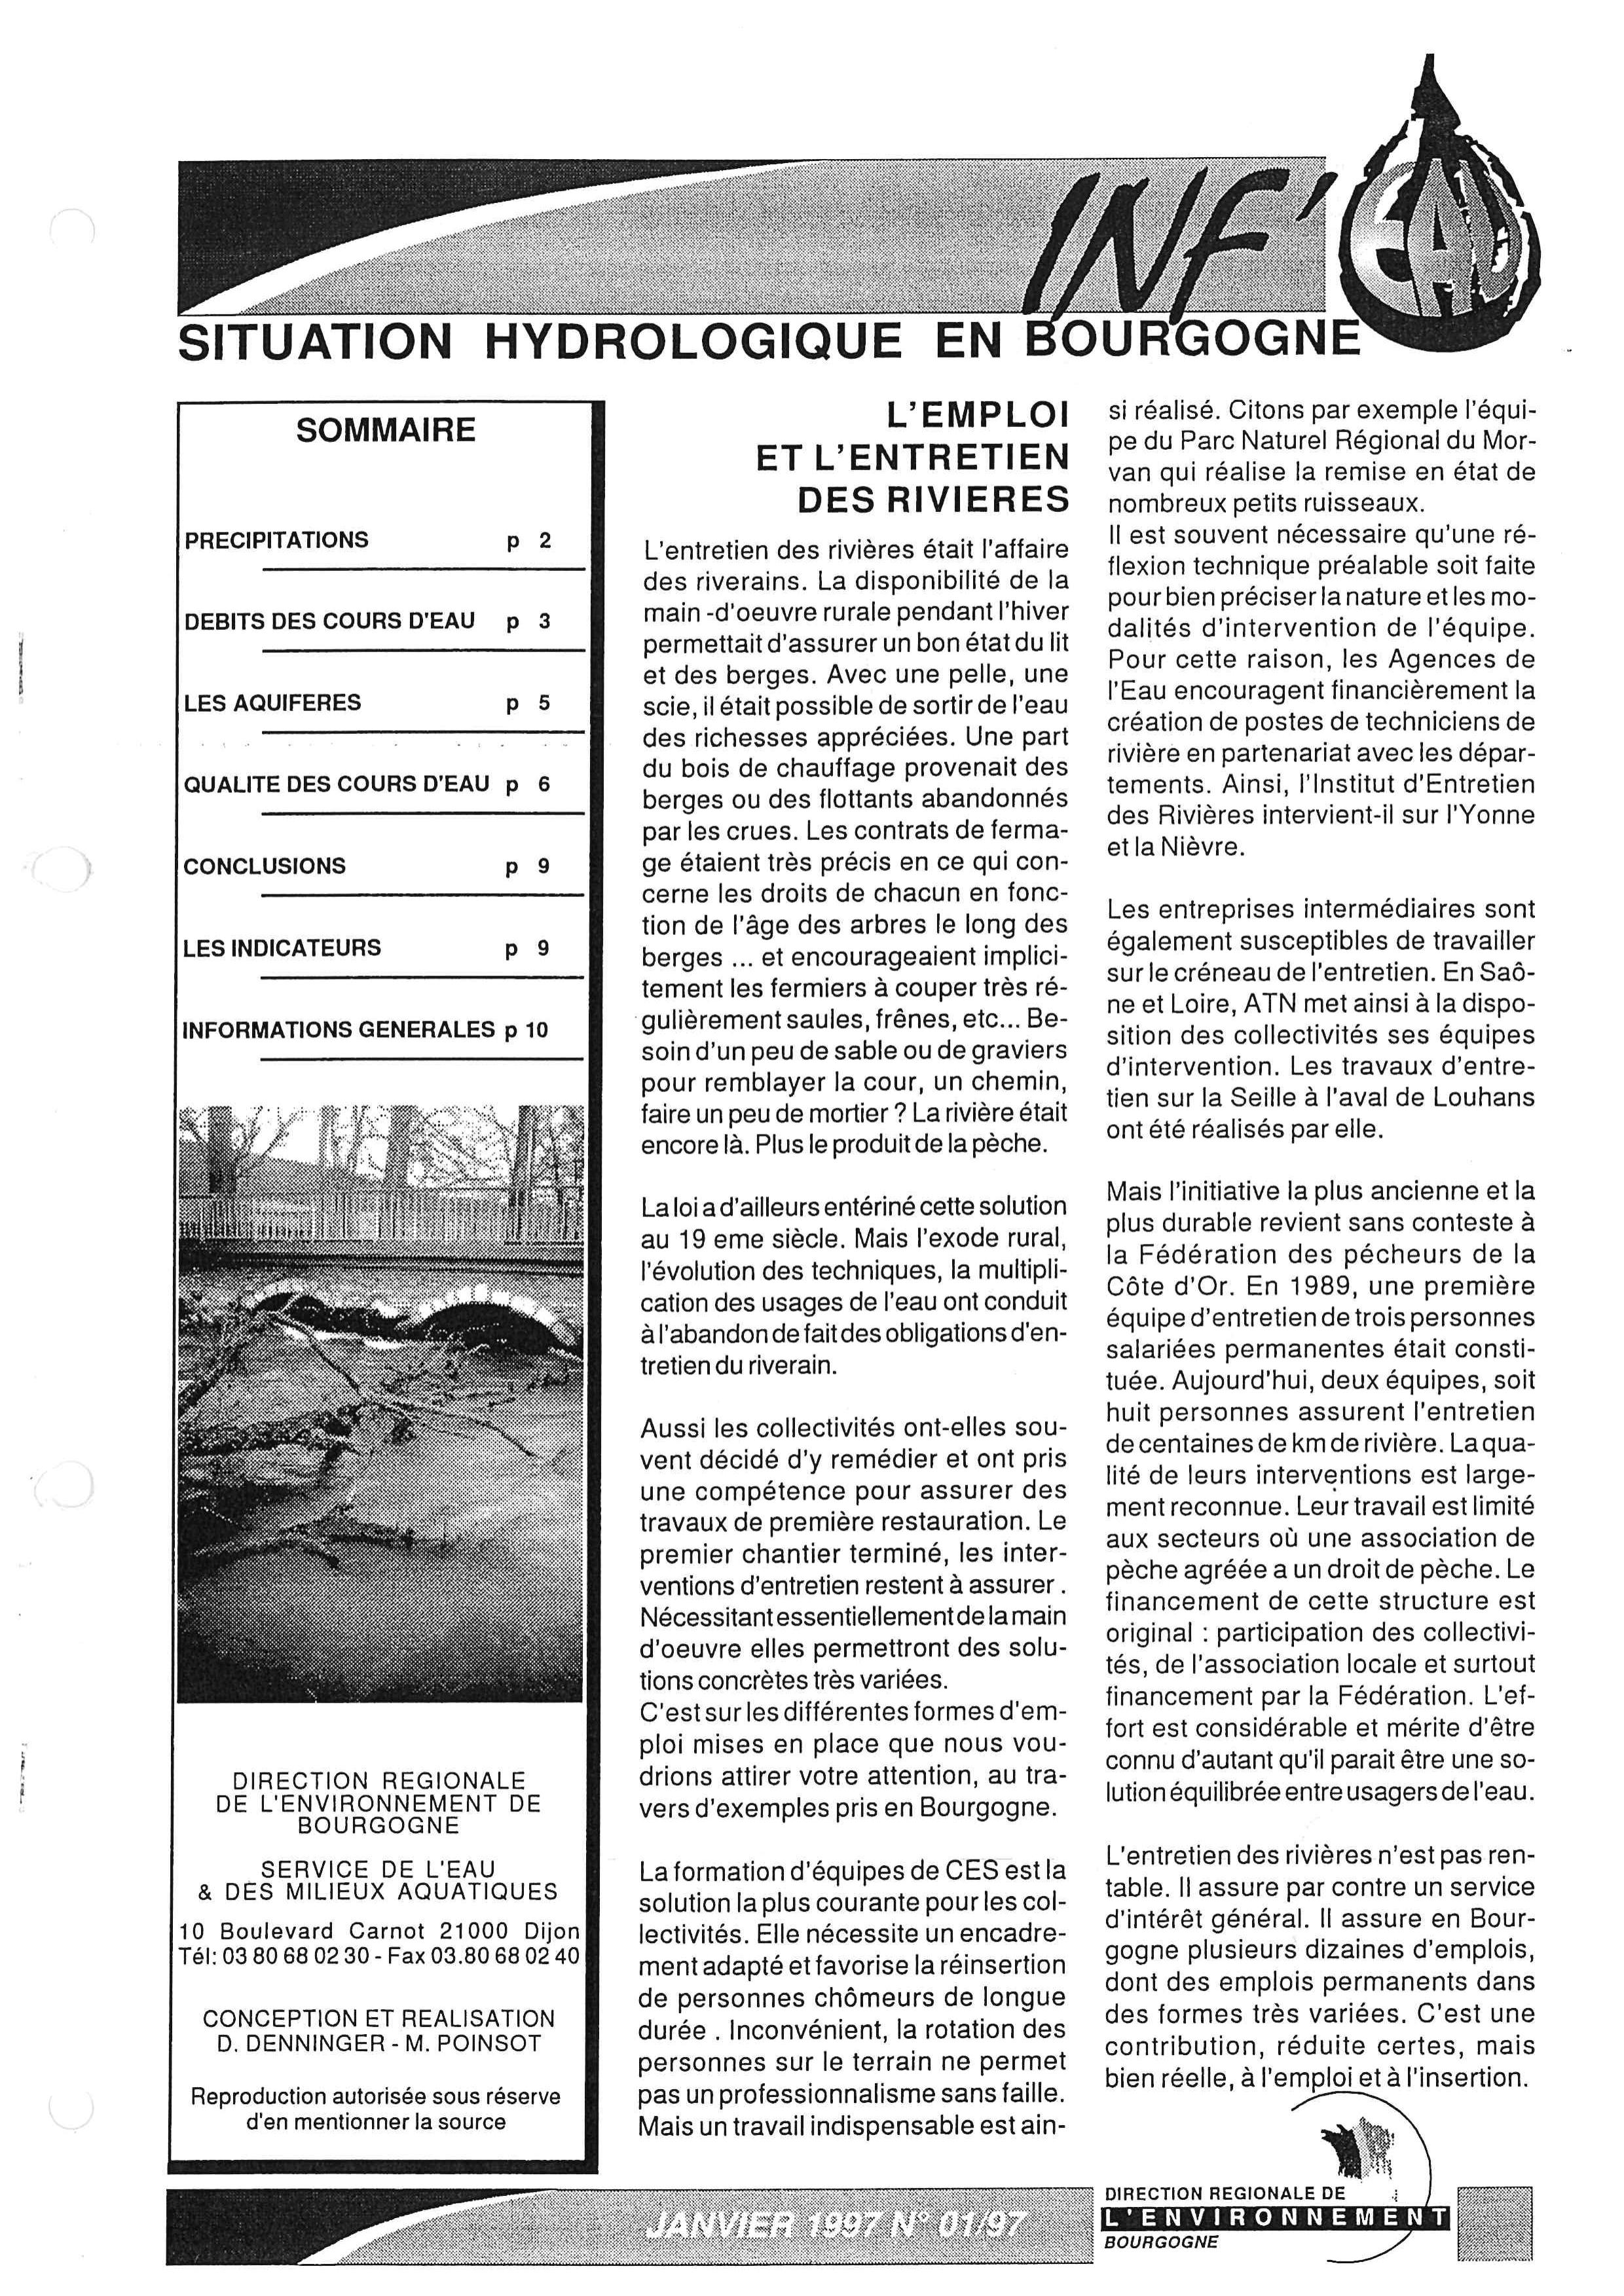 Bulletin hydrologique du mois de janvier 1997